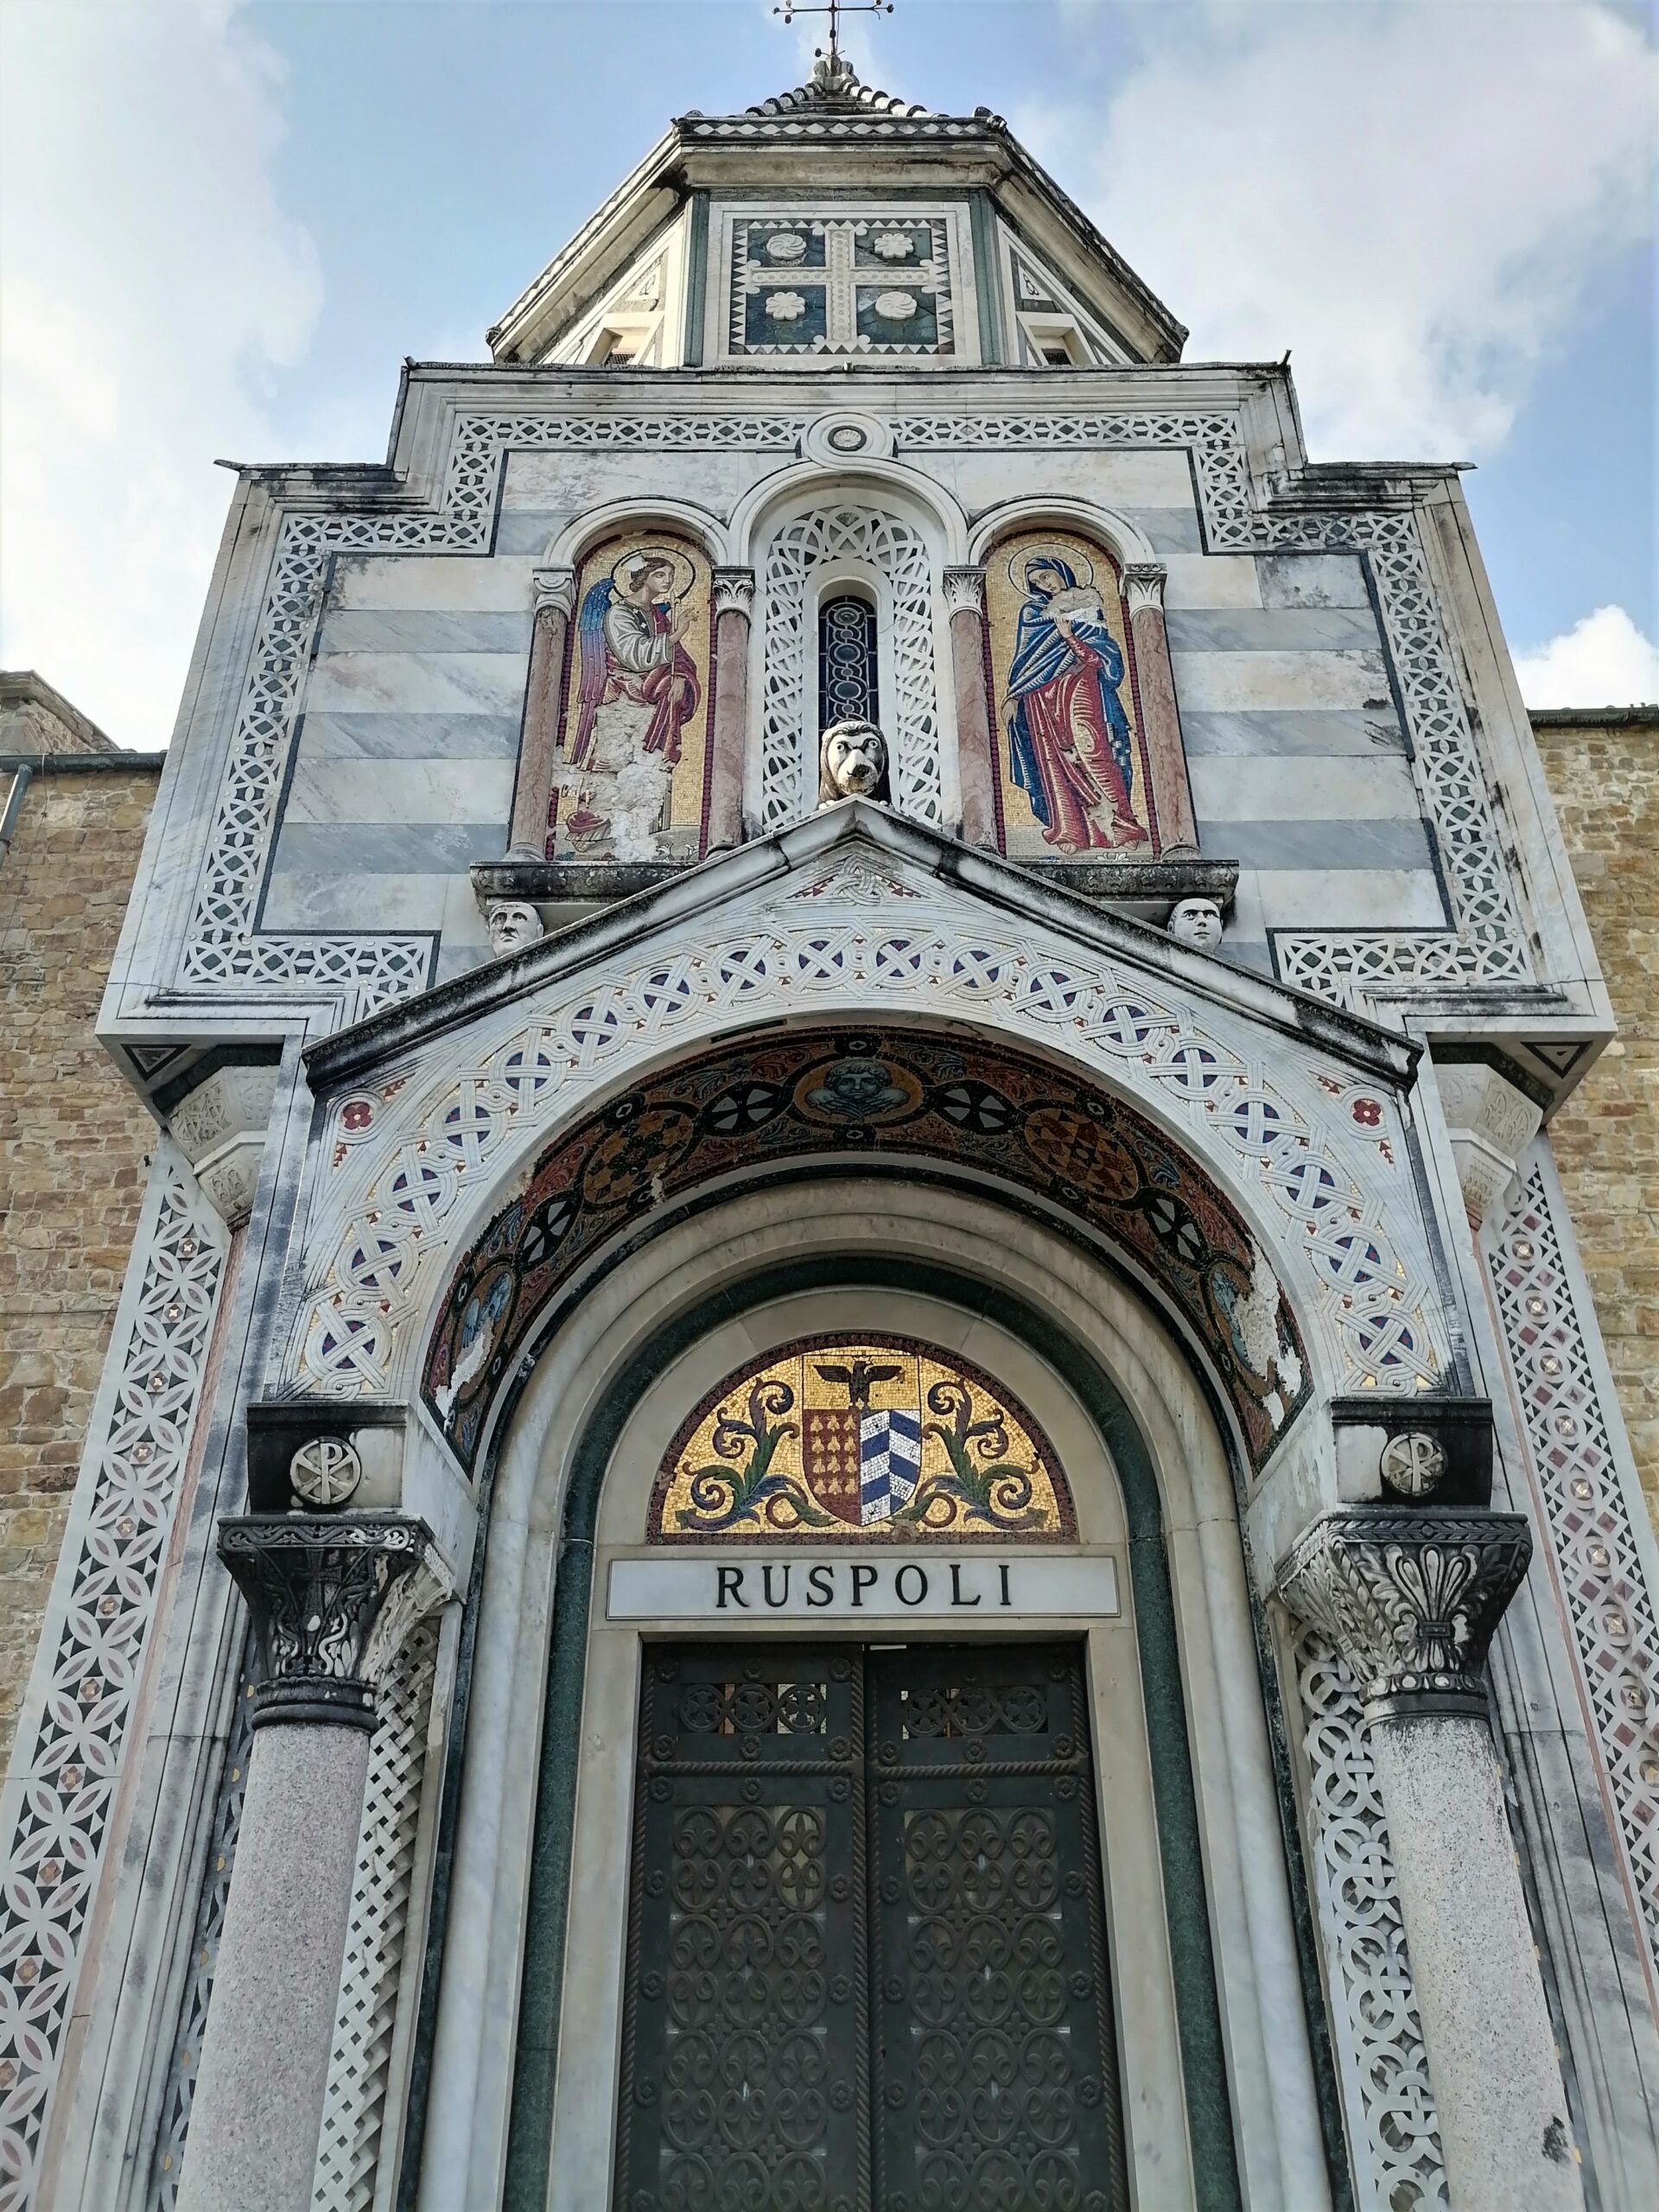 Kaplica Ruspoli, Cmentarz San Miniato al Monte we Florencji